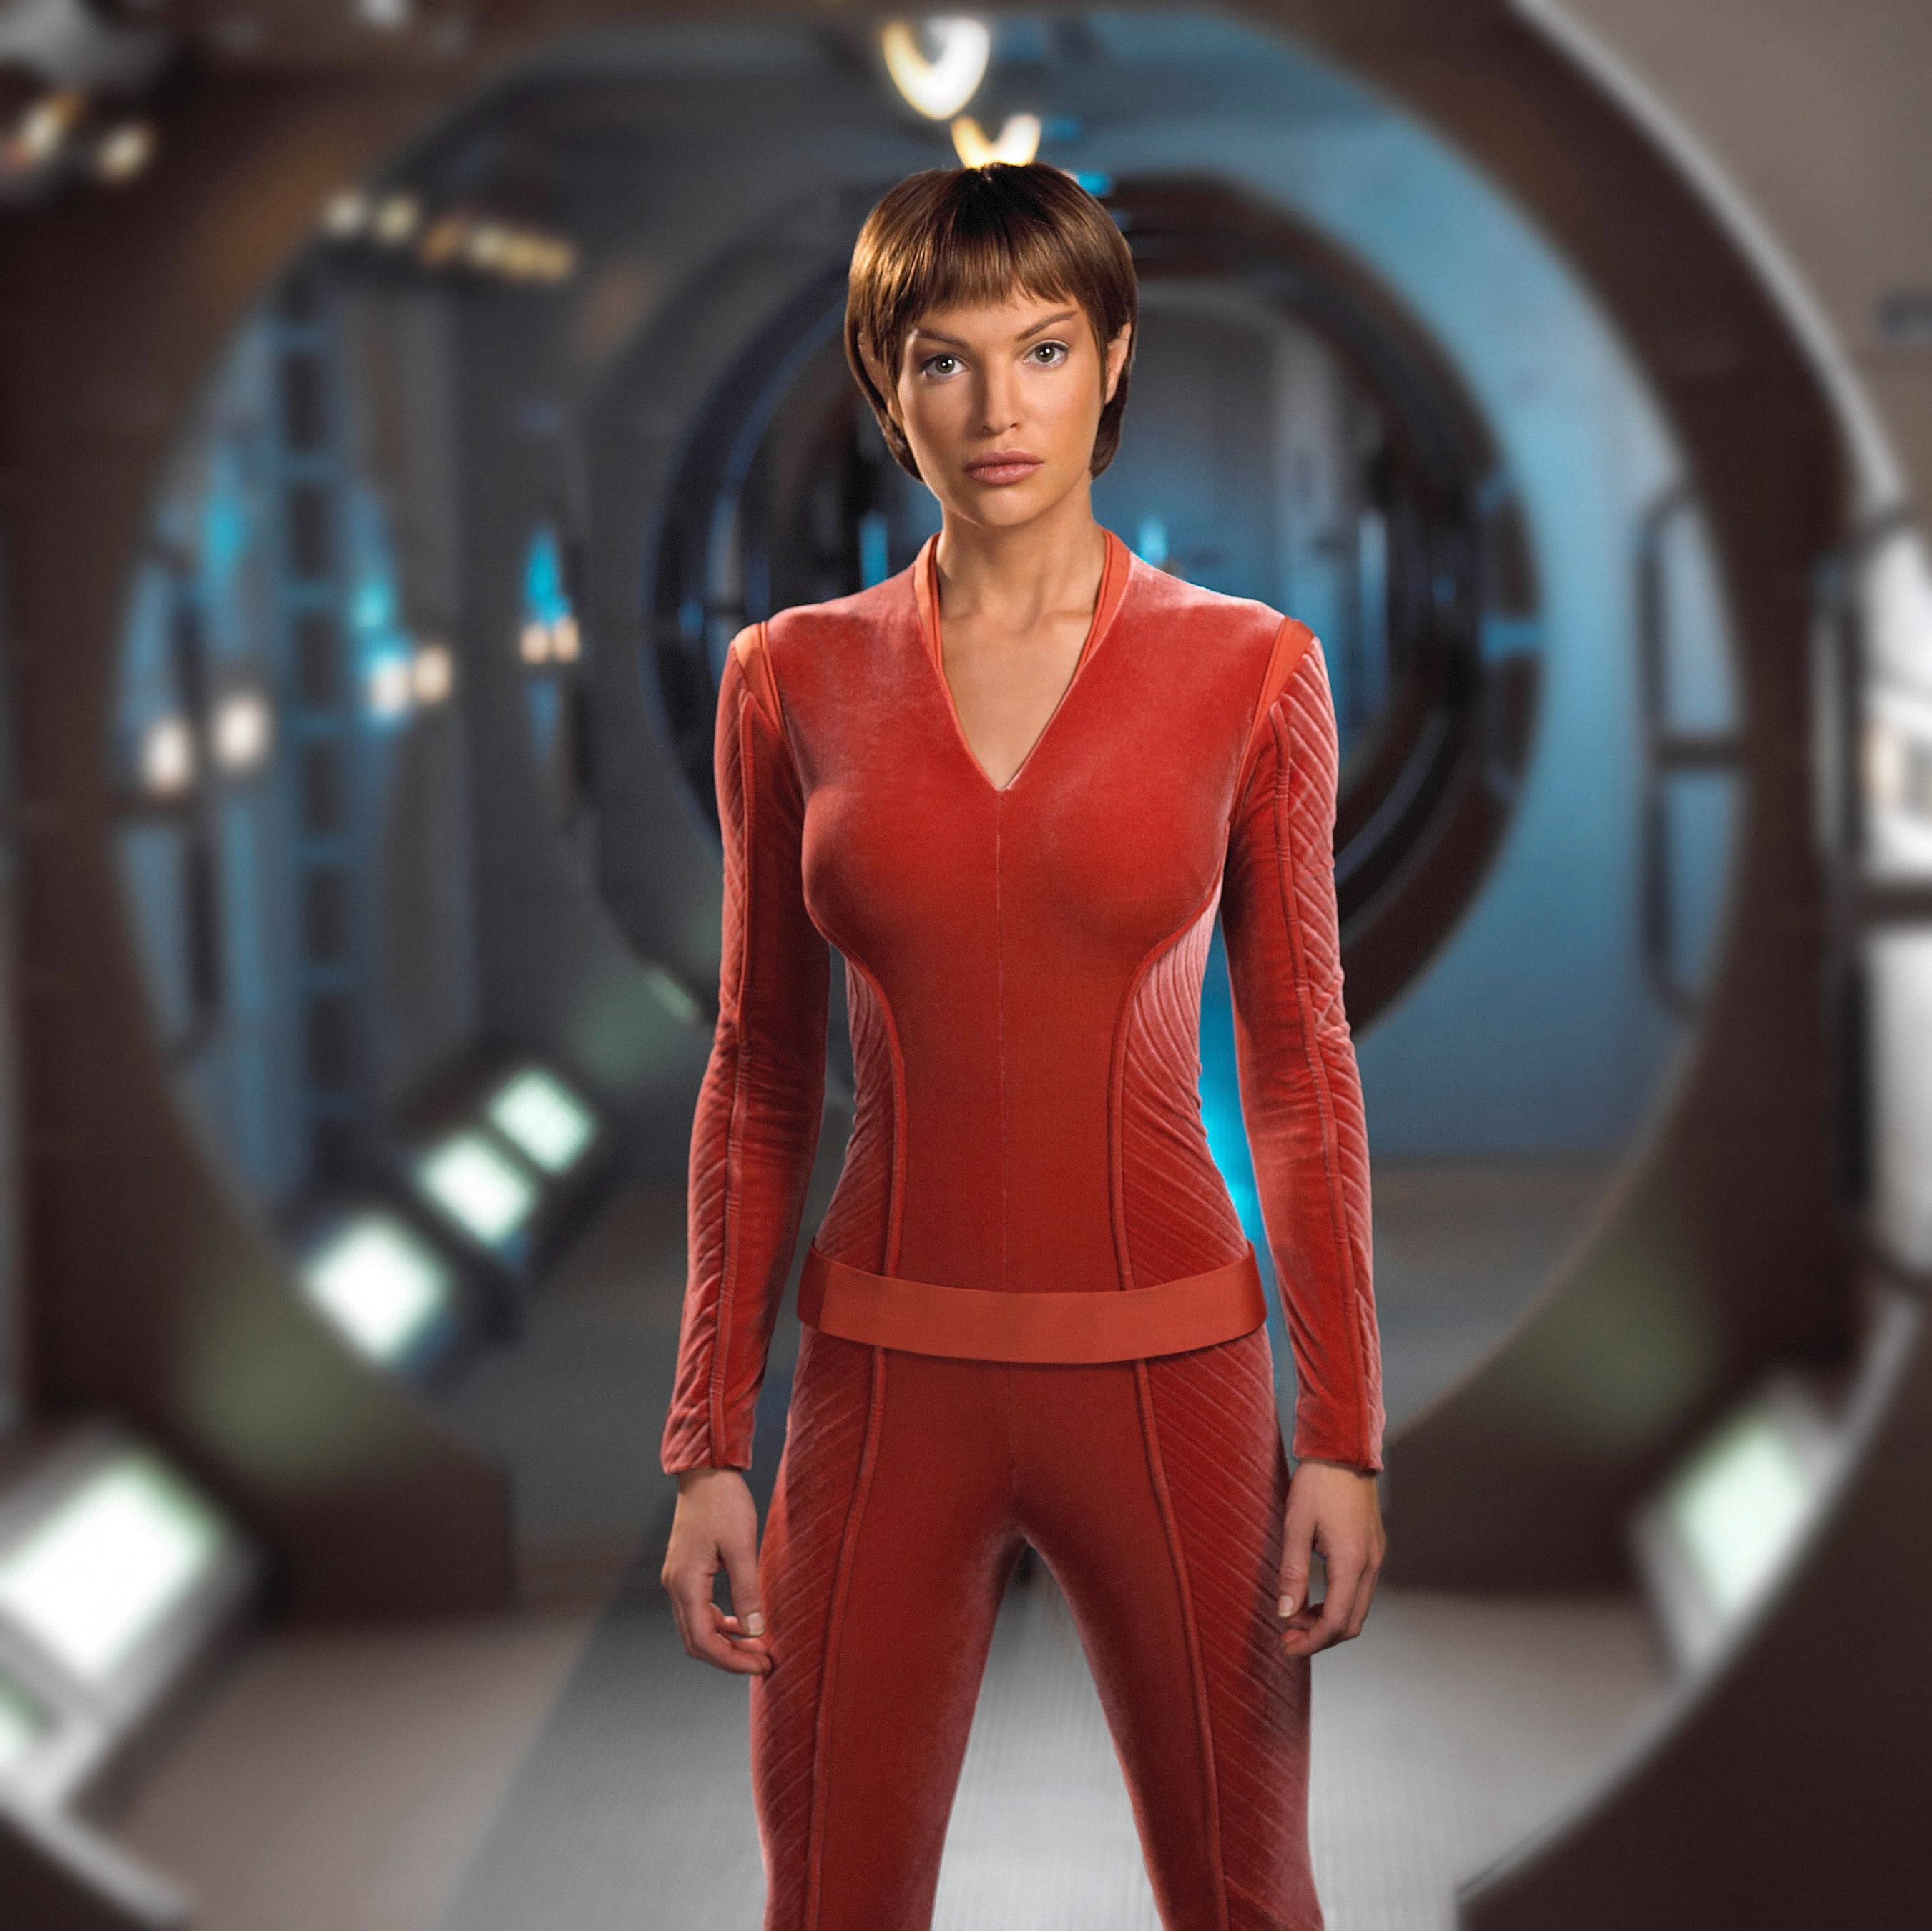 Jolene Blalock, TPol, Star Trek: Enterprise - HD Wallpaper View, Resize and...